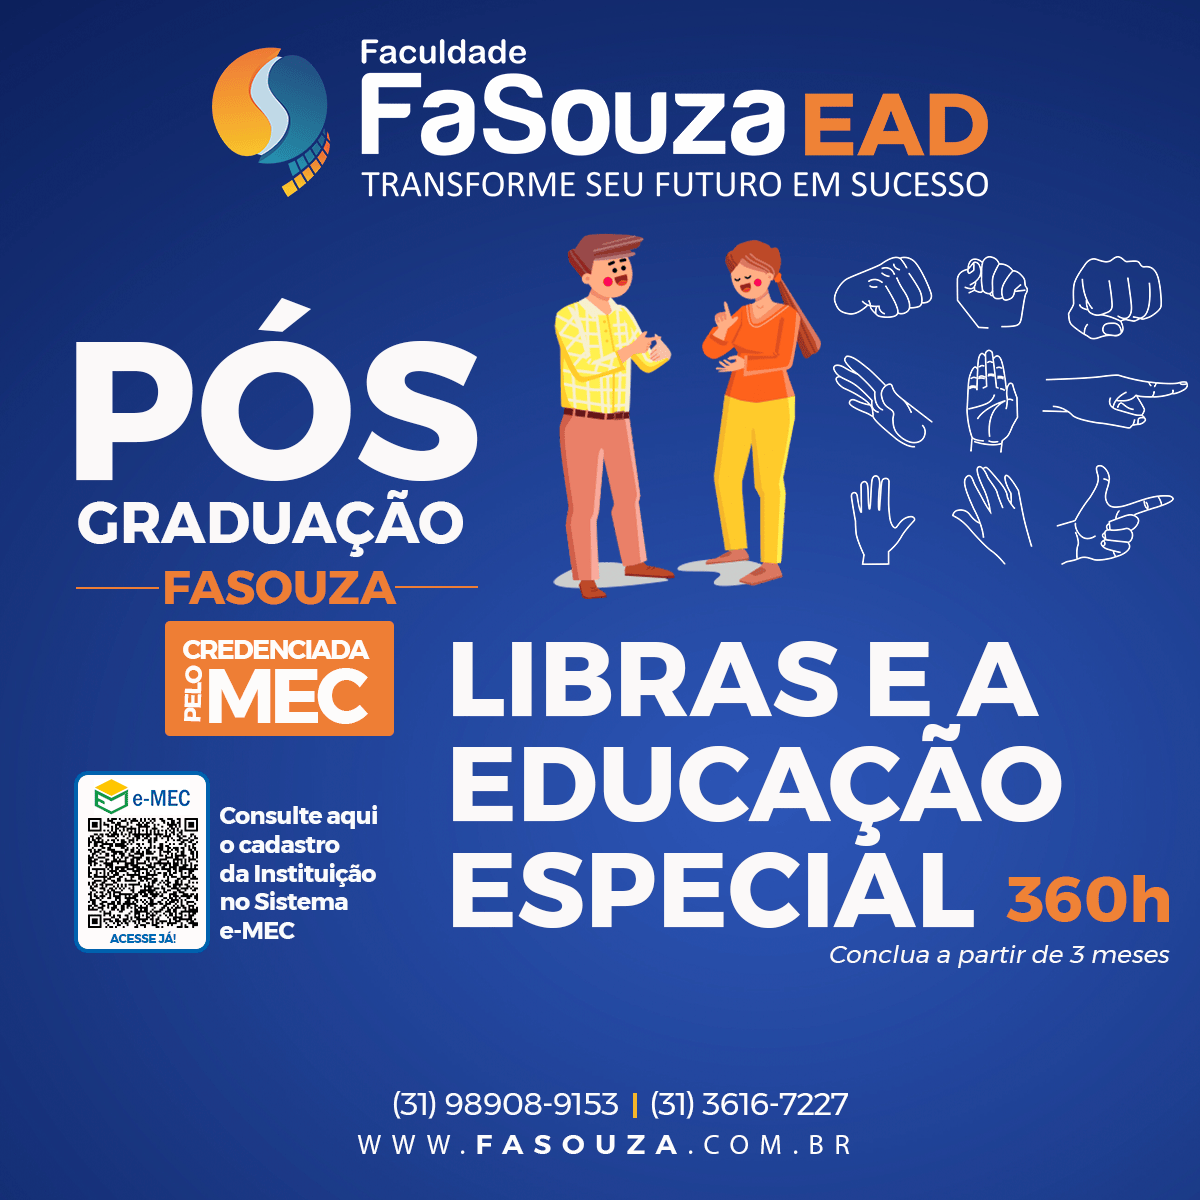 Faculdade FaSouza - Libras e a Educação Especial 360 horas